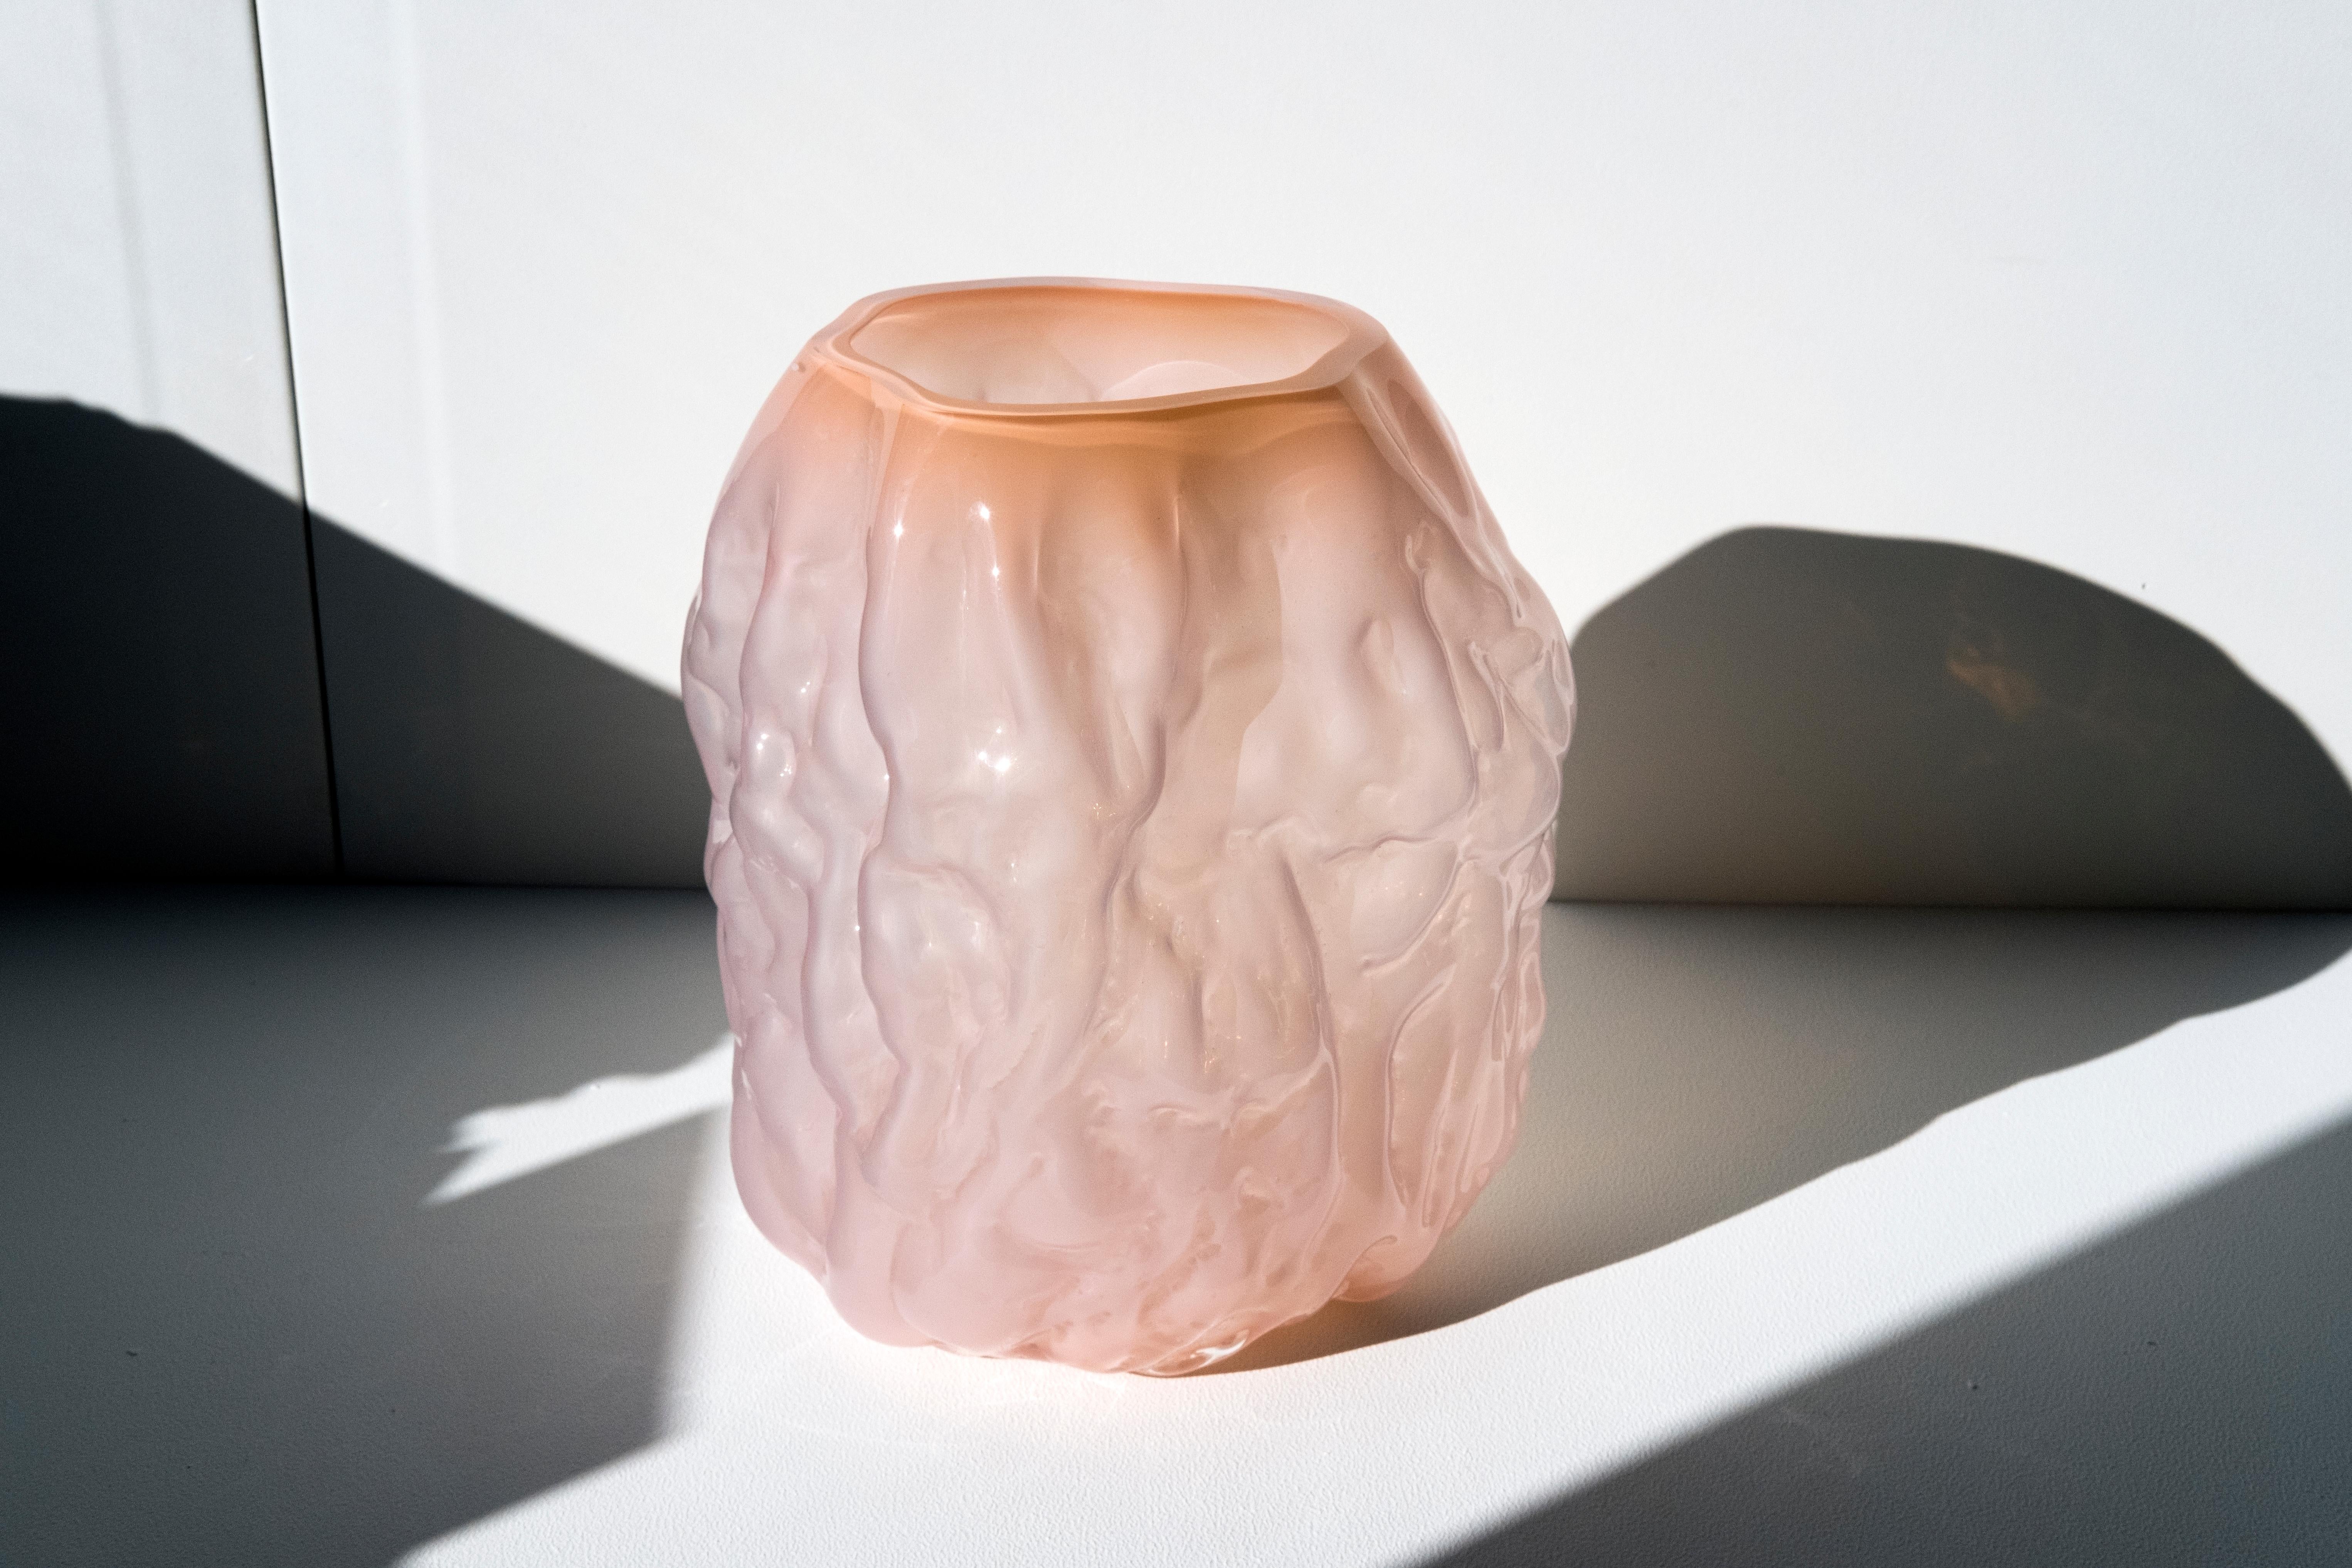 Vase aus mundgeblasenem Glas, hergestellt in Formen aus weichem Ton, die von Hand geformt werden, bevor das Glas in die Form geblasen wird. Dieses Verfahren macht jedes Stück einzigartig und verleiht ihm eine faltige Oberfläche. HINWEIS: Auf der